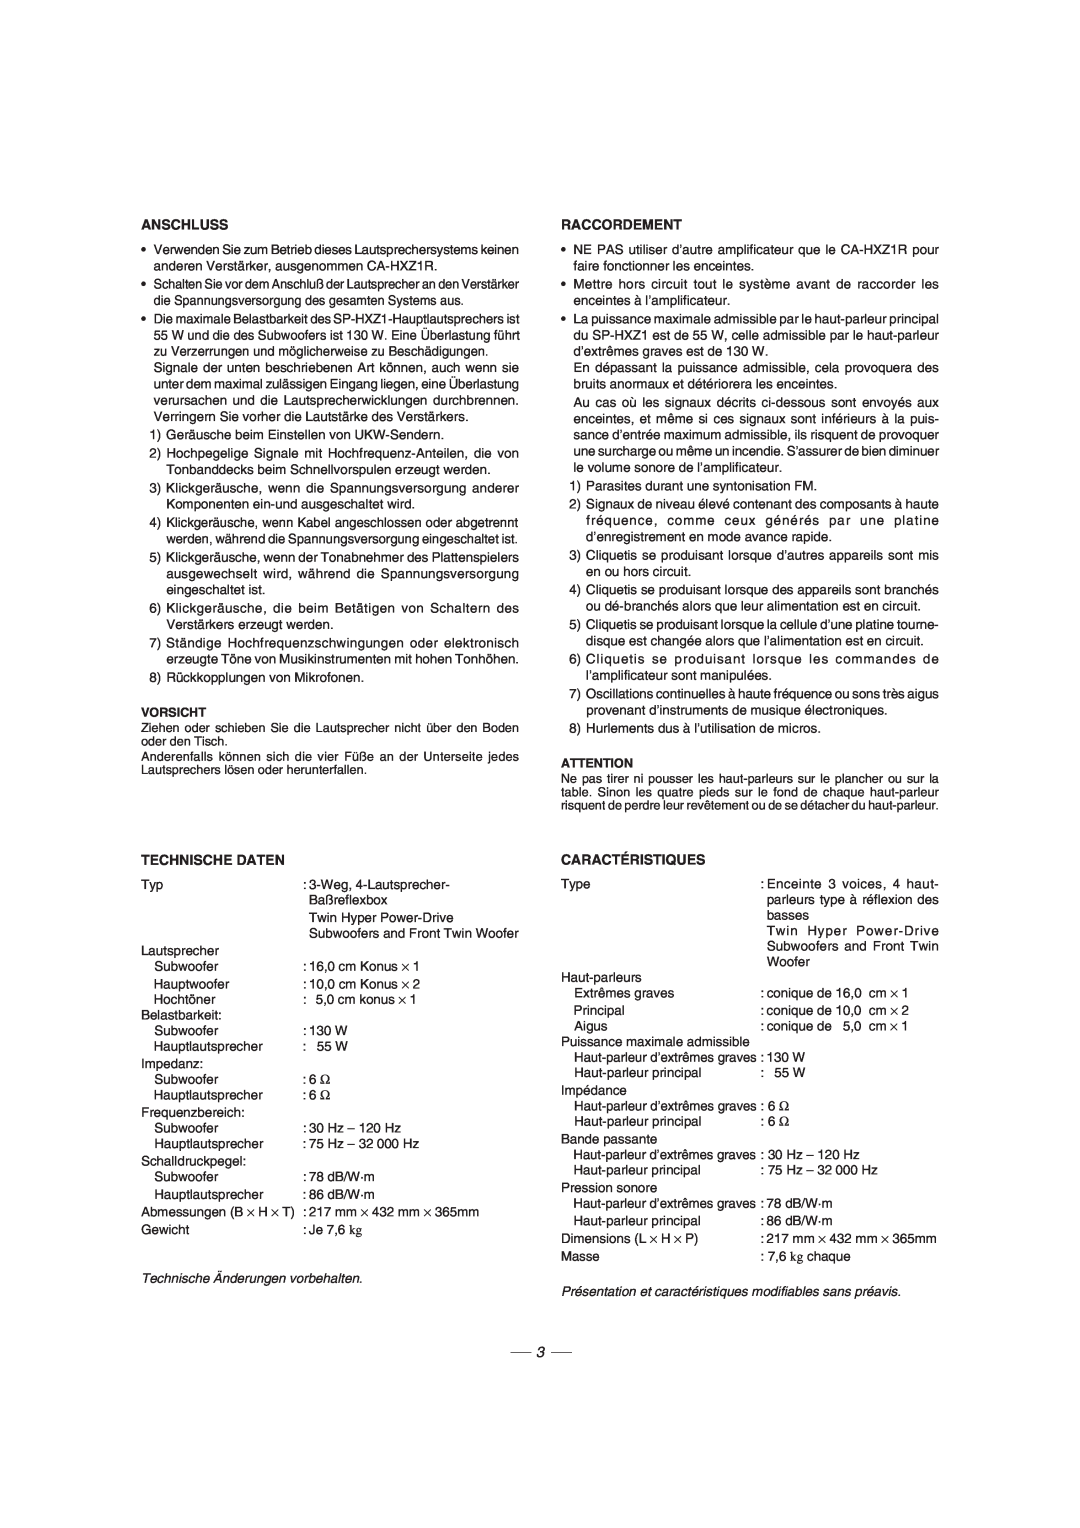 JVC GVT0077-008A manual Anschluss, Raccordement, Technische Daten, Caractéristiques 